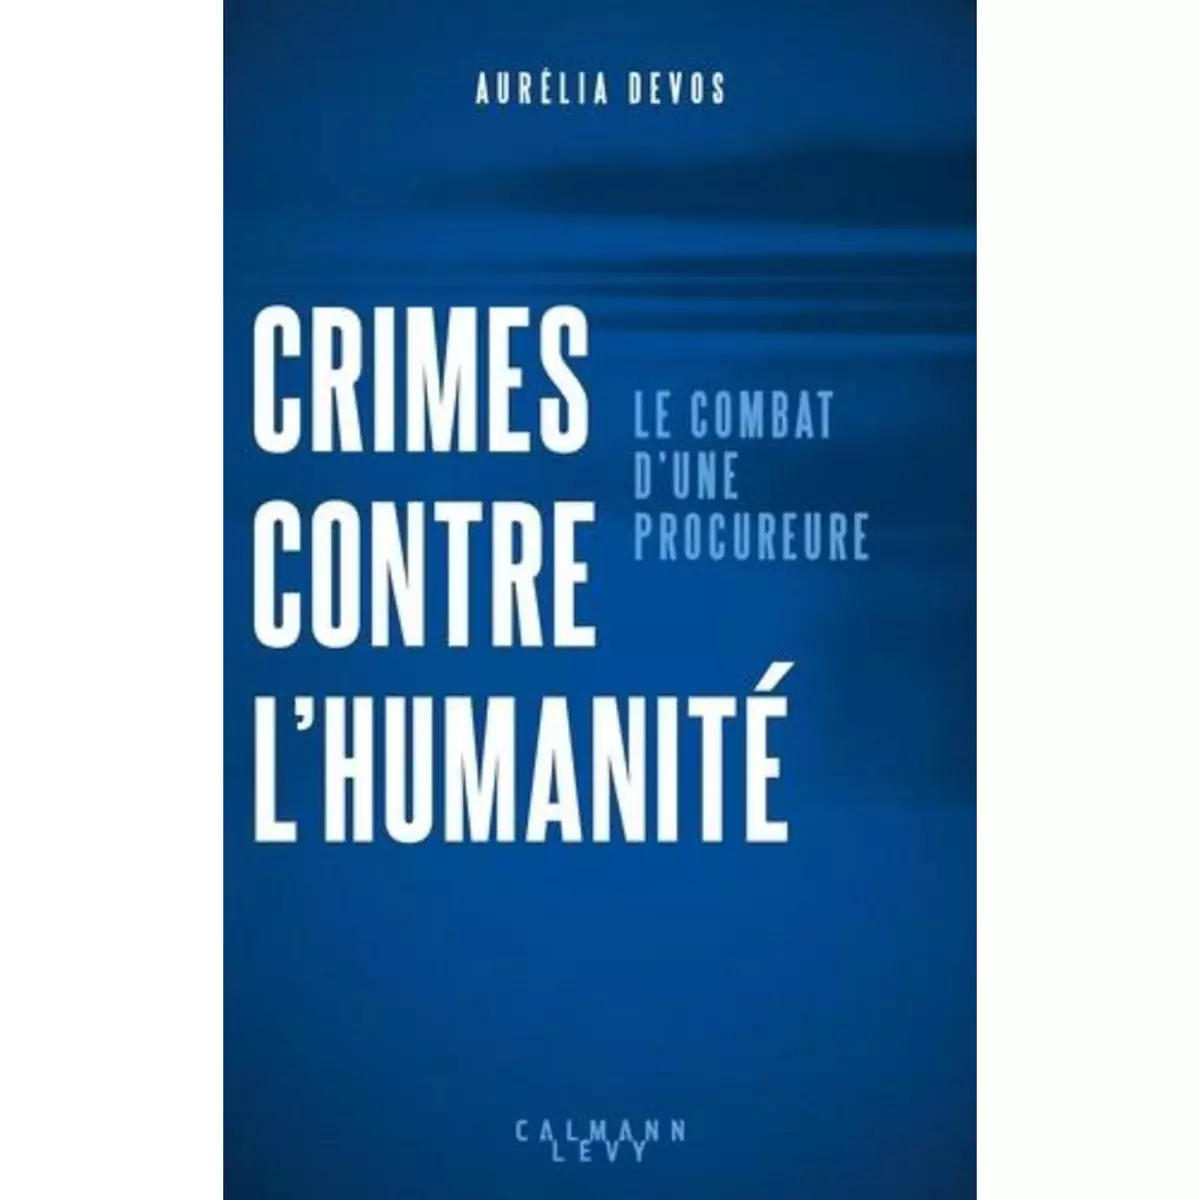  CRIMES CONTRE L'HUMANITE. LE COMBAT D'UNE PROCUREURE, Devos Aurélia